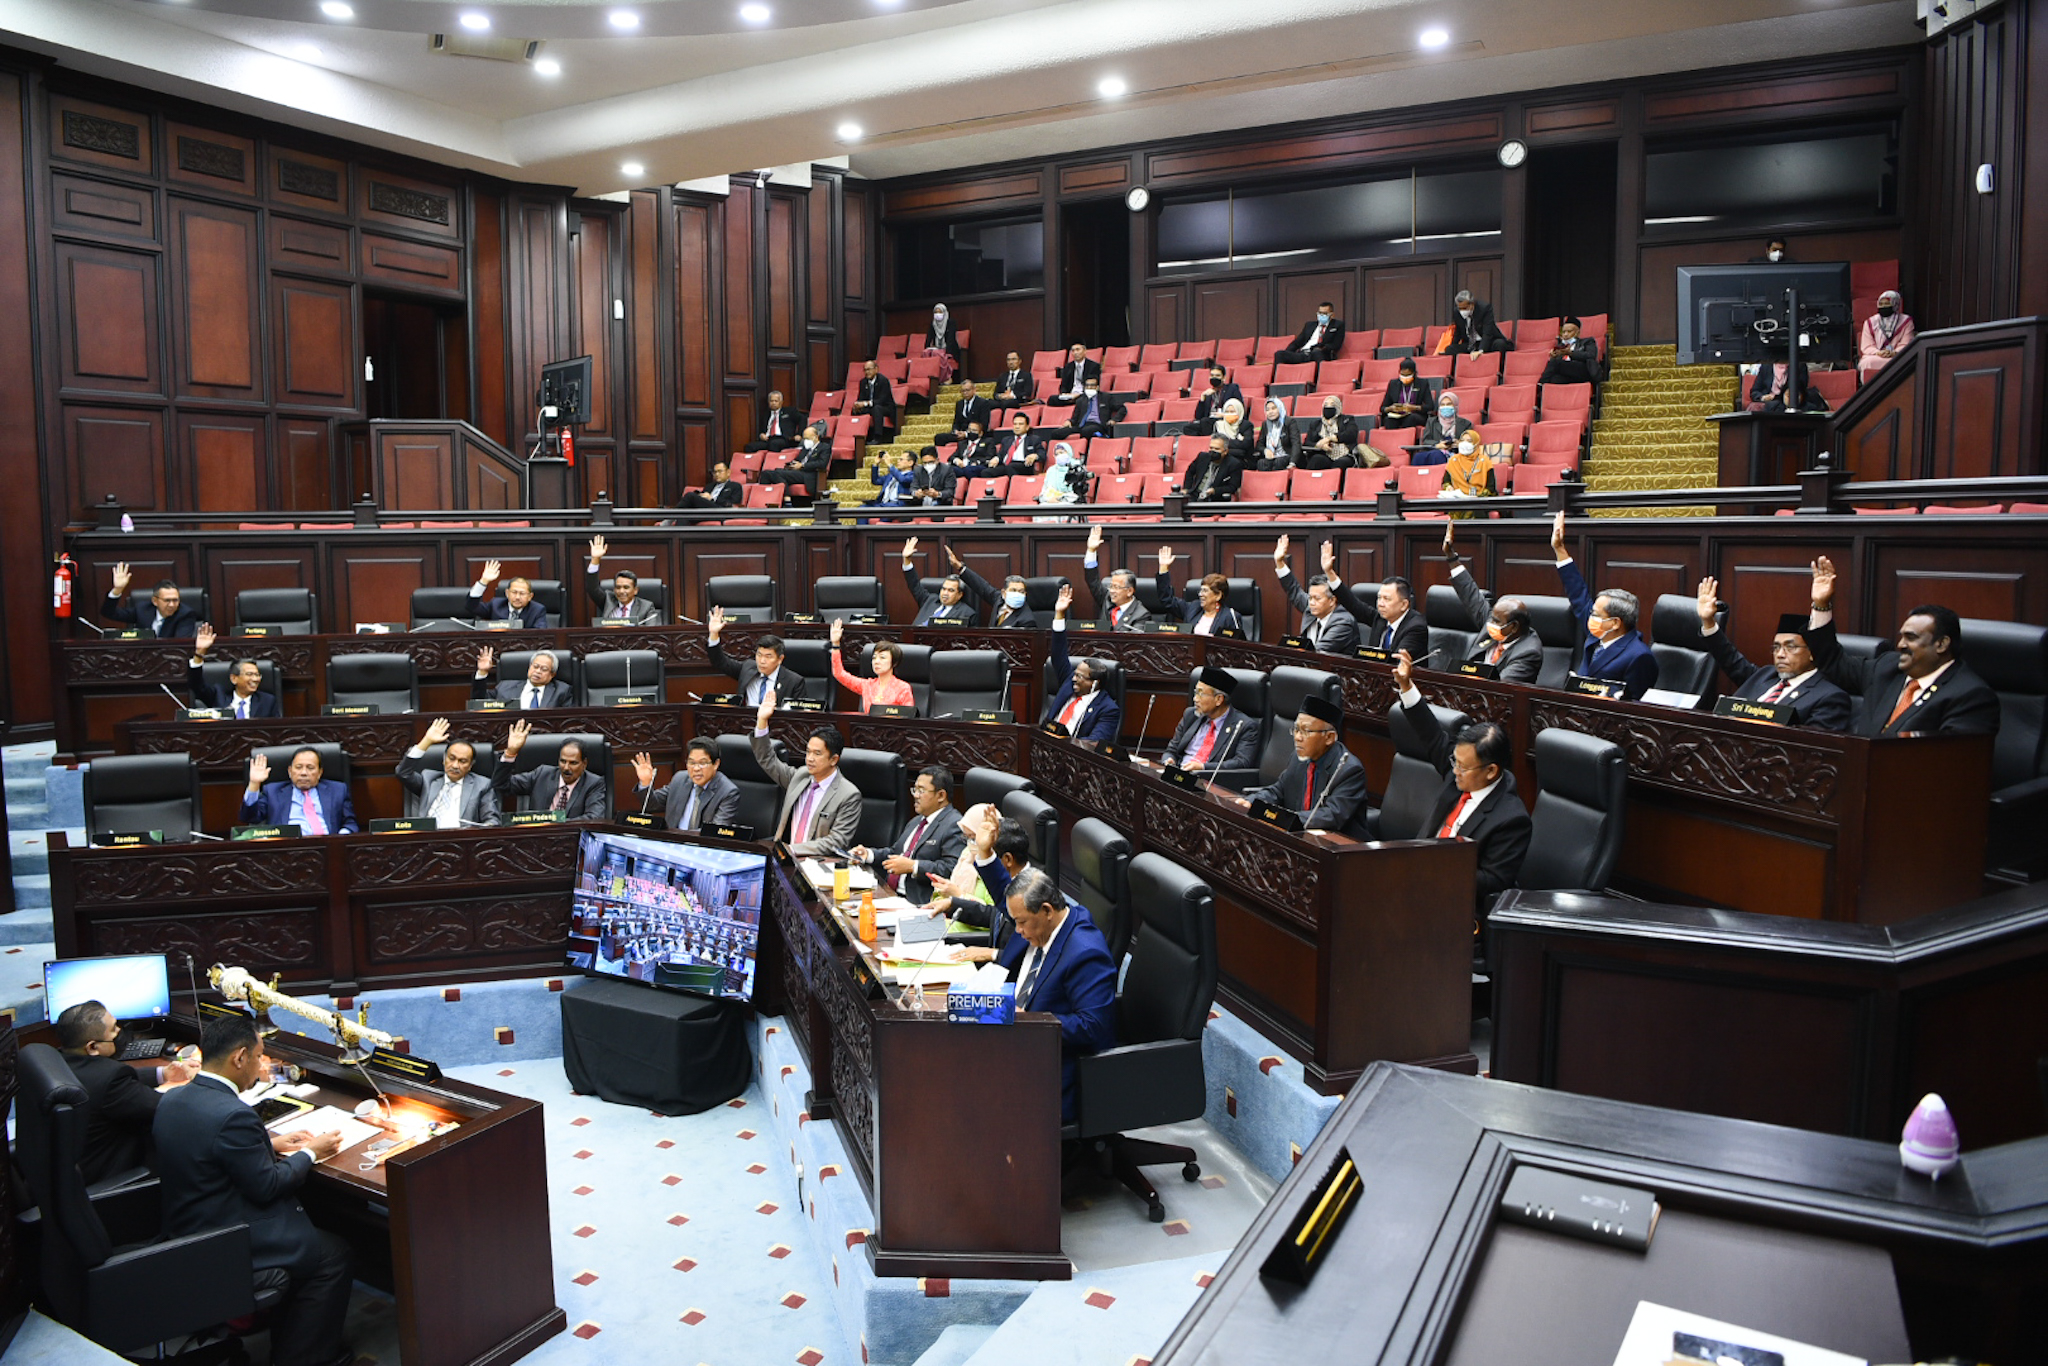 NS芙蓉/森立法议会创先举，“朝野”议员团结一致举手通过财政预算案